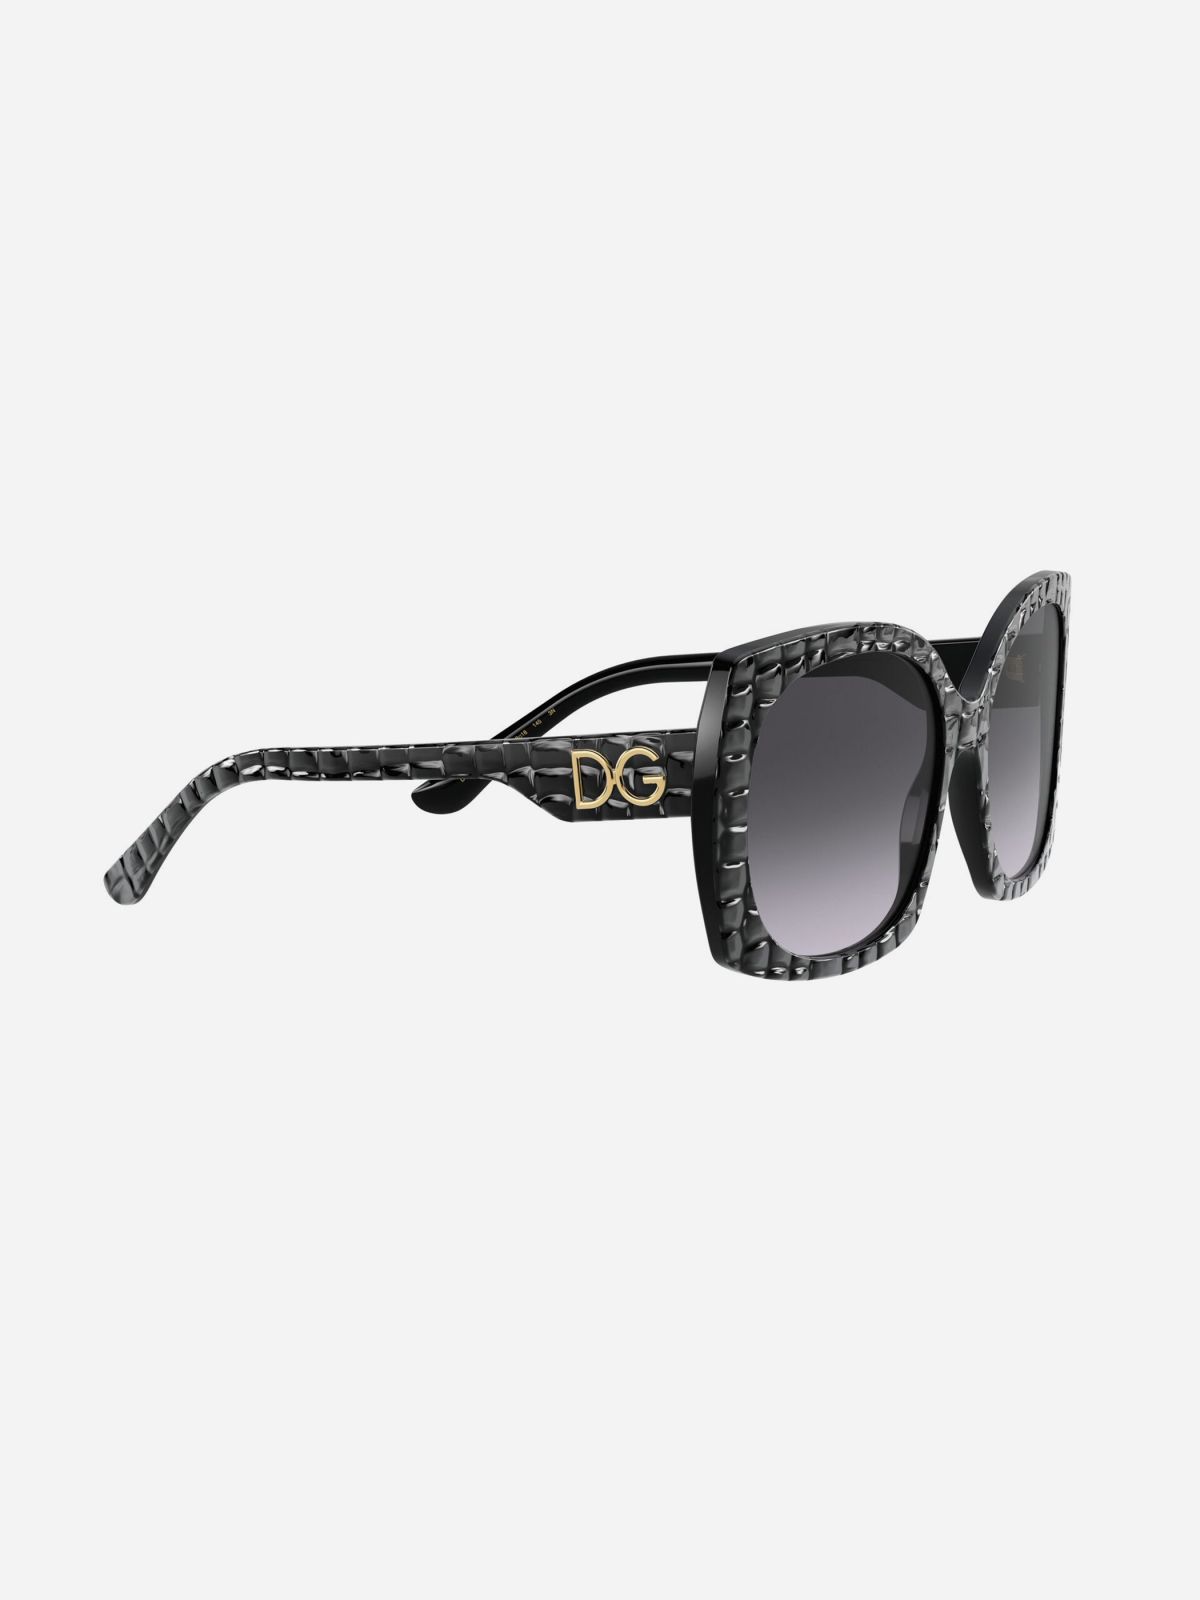  משקפי שמש עם מסגרת בטקסטורה / נשים של D&G